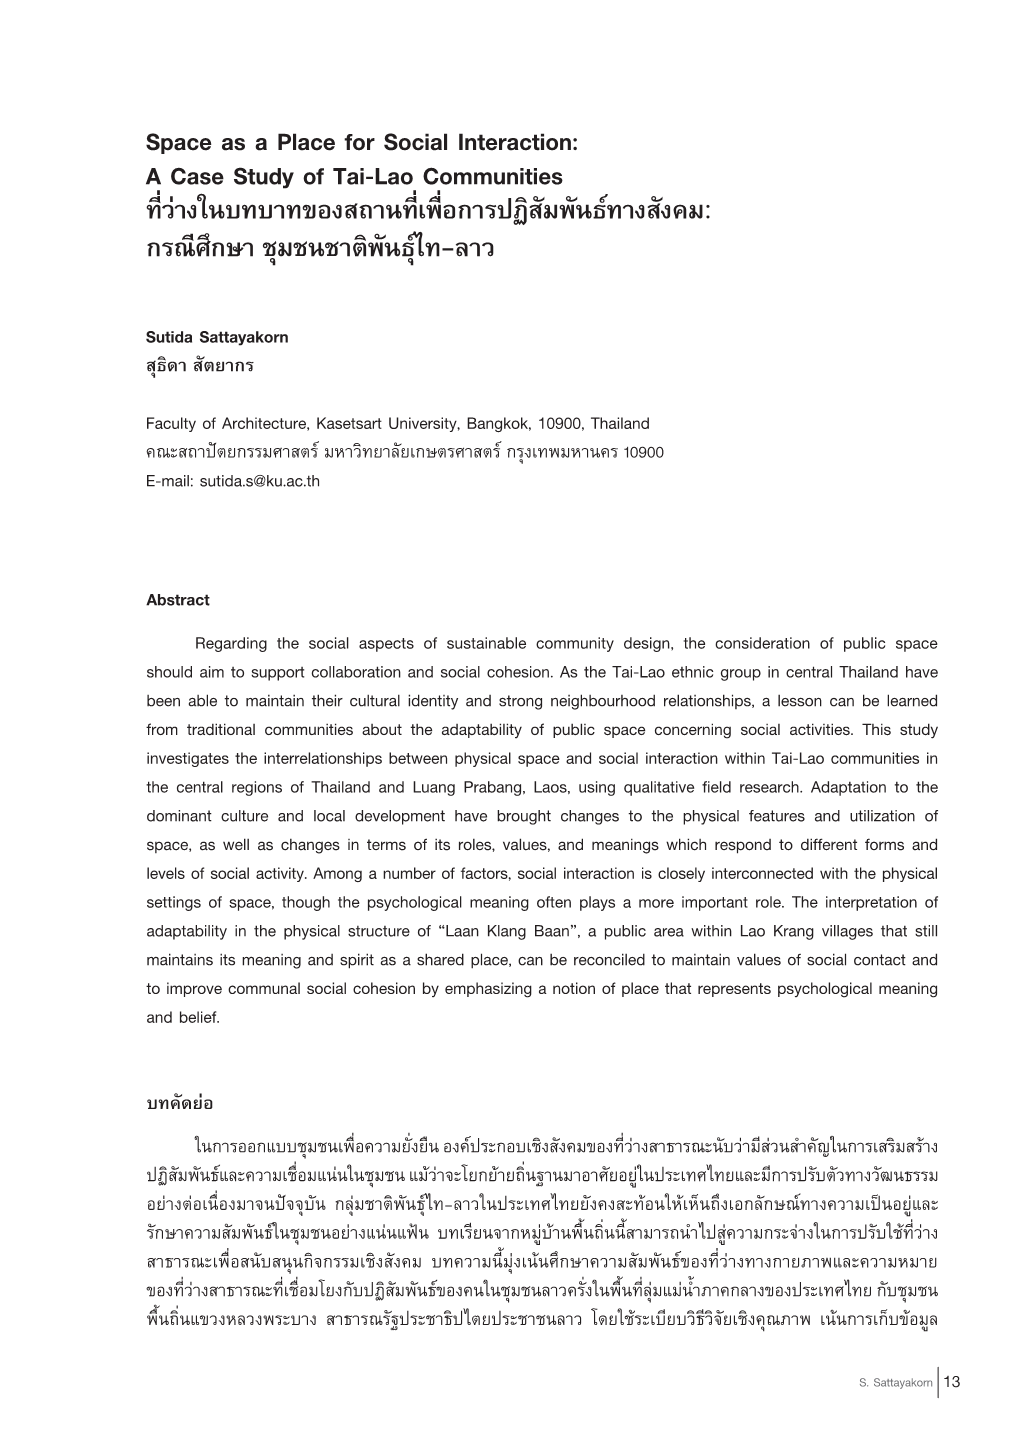 Space As a Place for Social Interaction: a Case Study of Tai-Lao Communities ที่ว่างในบทบาทของสถานที่เพื่อการปฏิสัมพันธ์ทางสังคม: กรณีศึกษา ชุมชนชาติพันธุ์ไท-ลาว